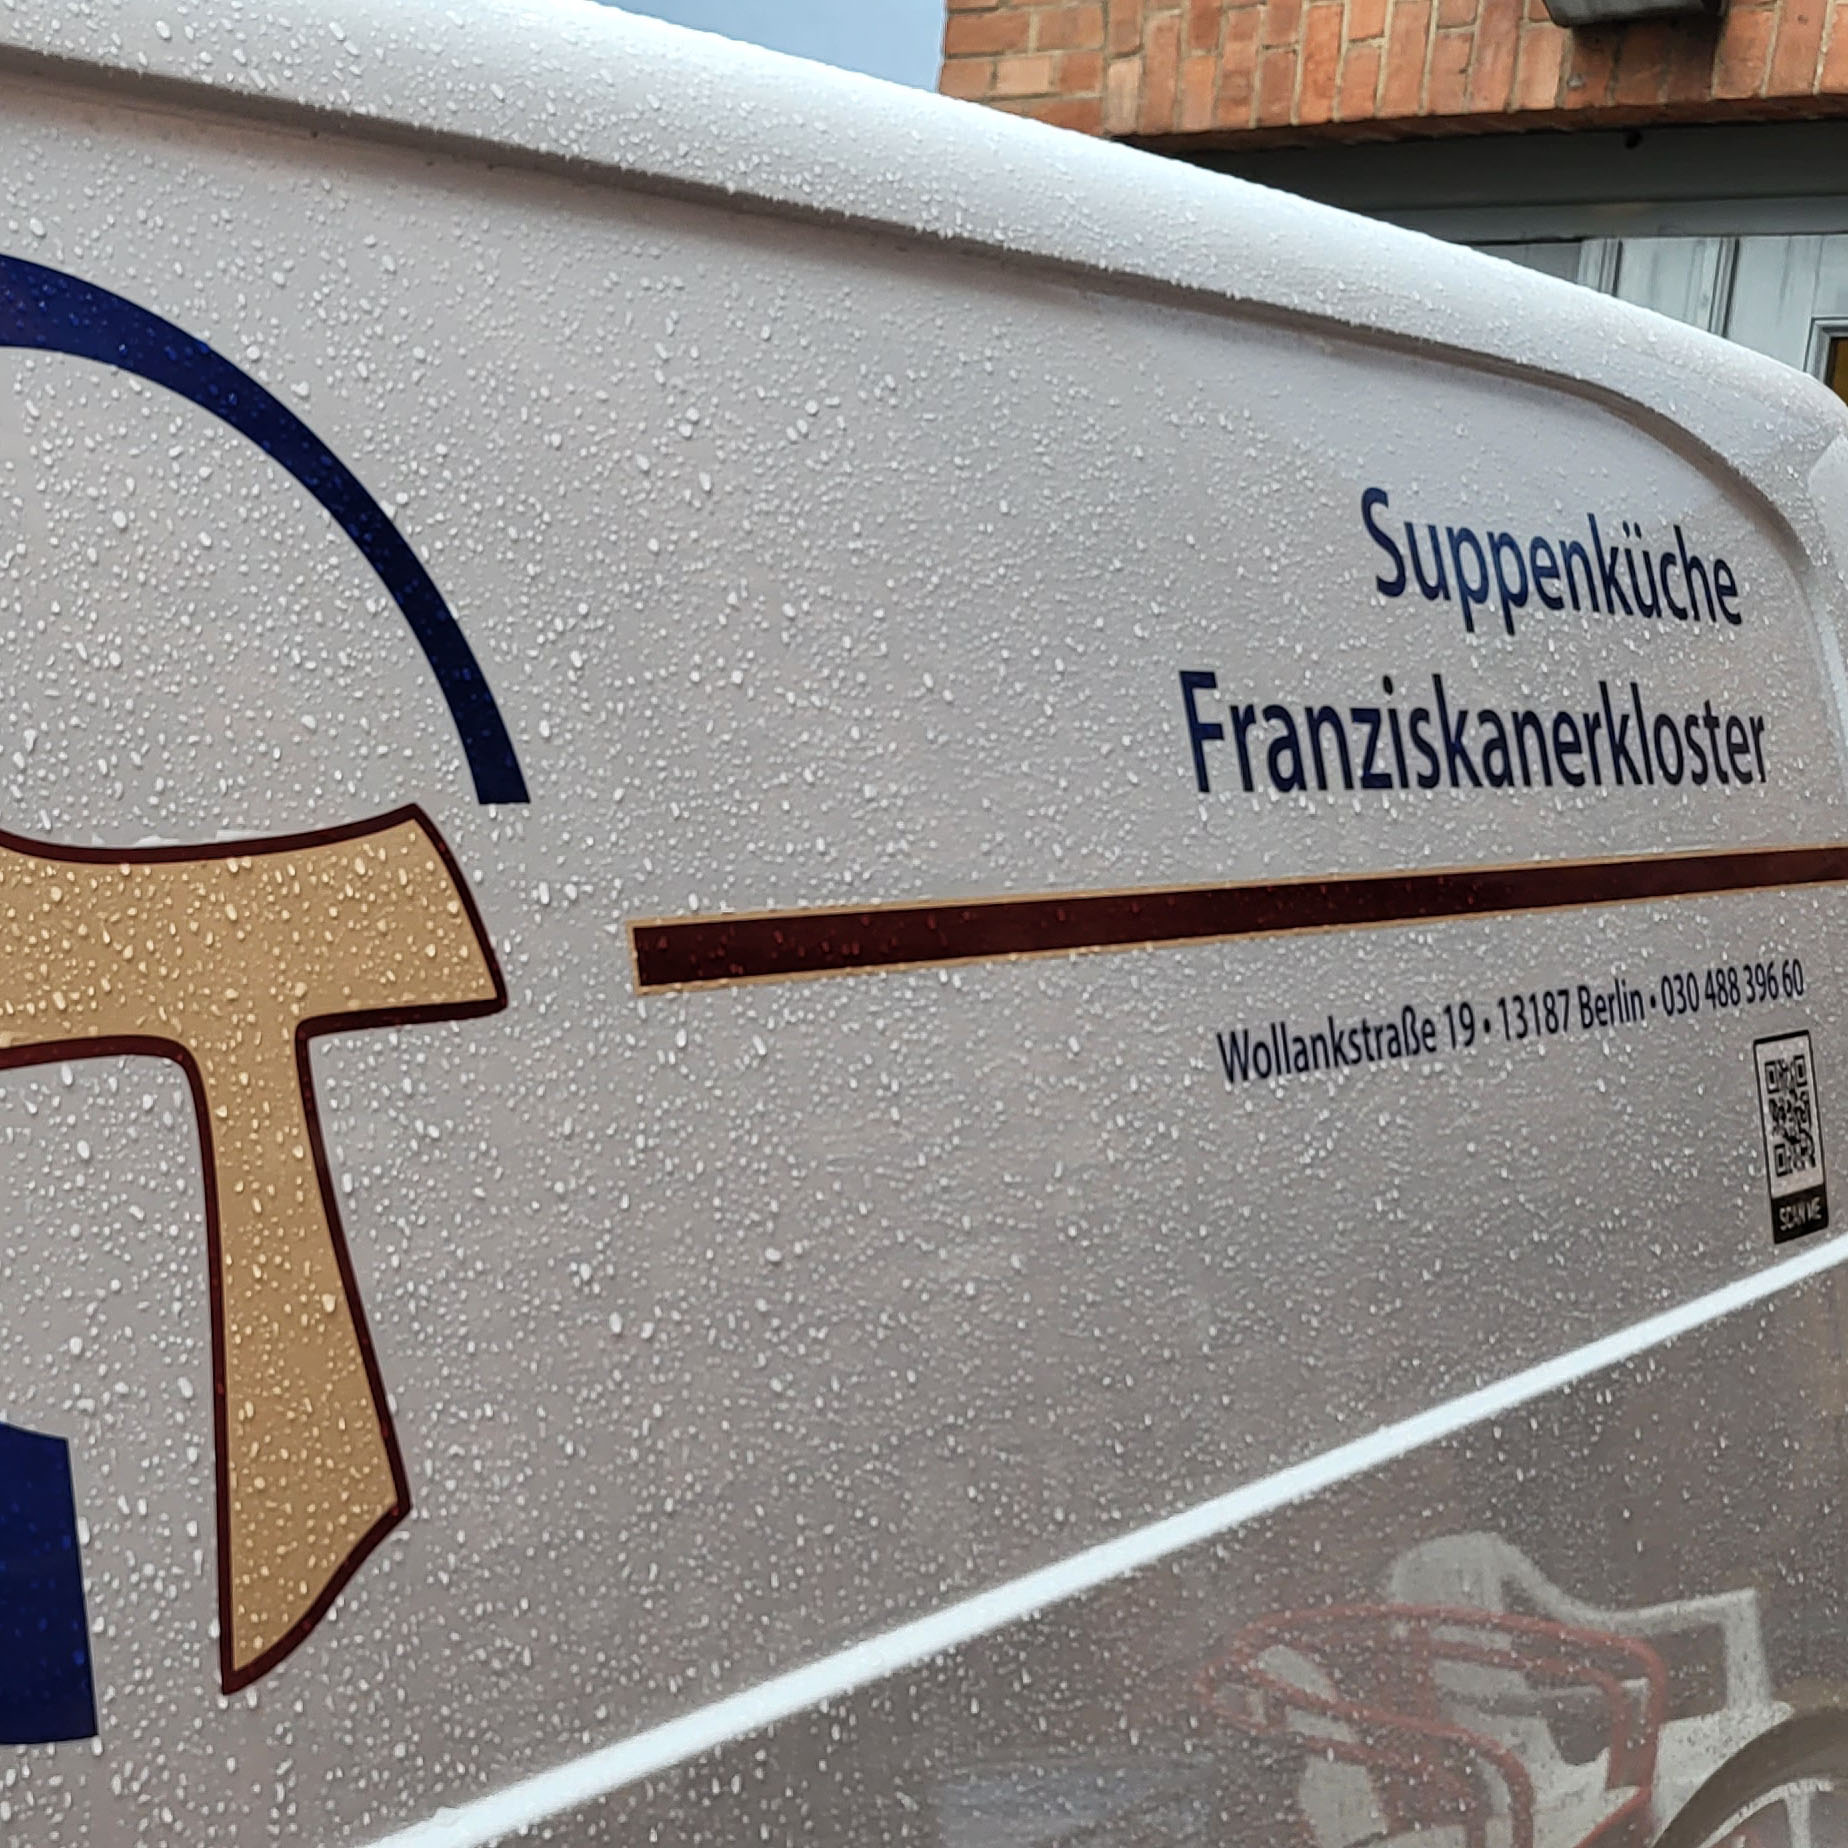 Das Logo der Suppenküche auf dem Transporter des Franziskanerklosters.